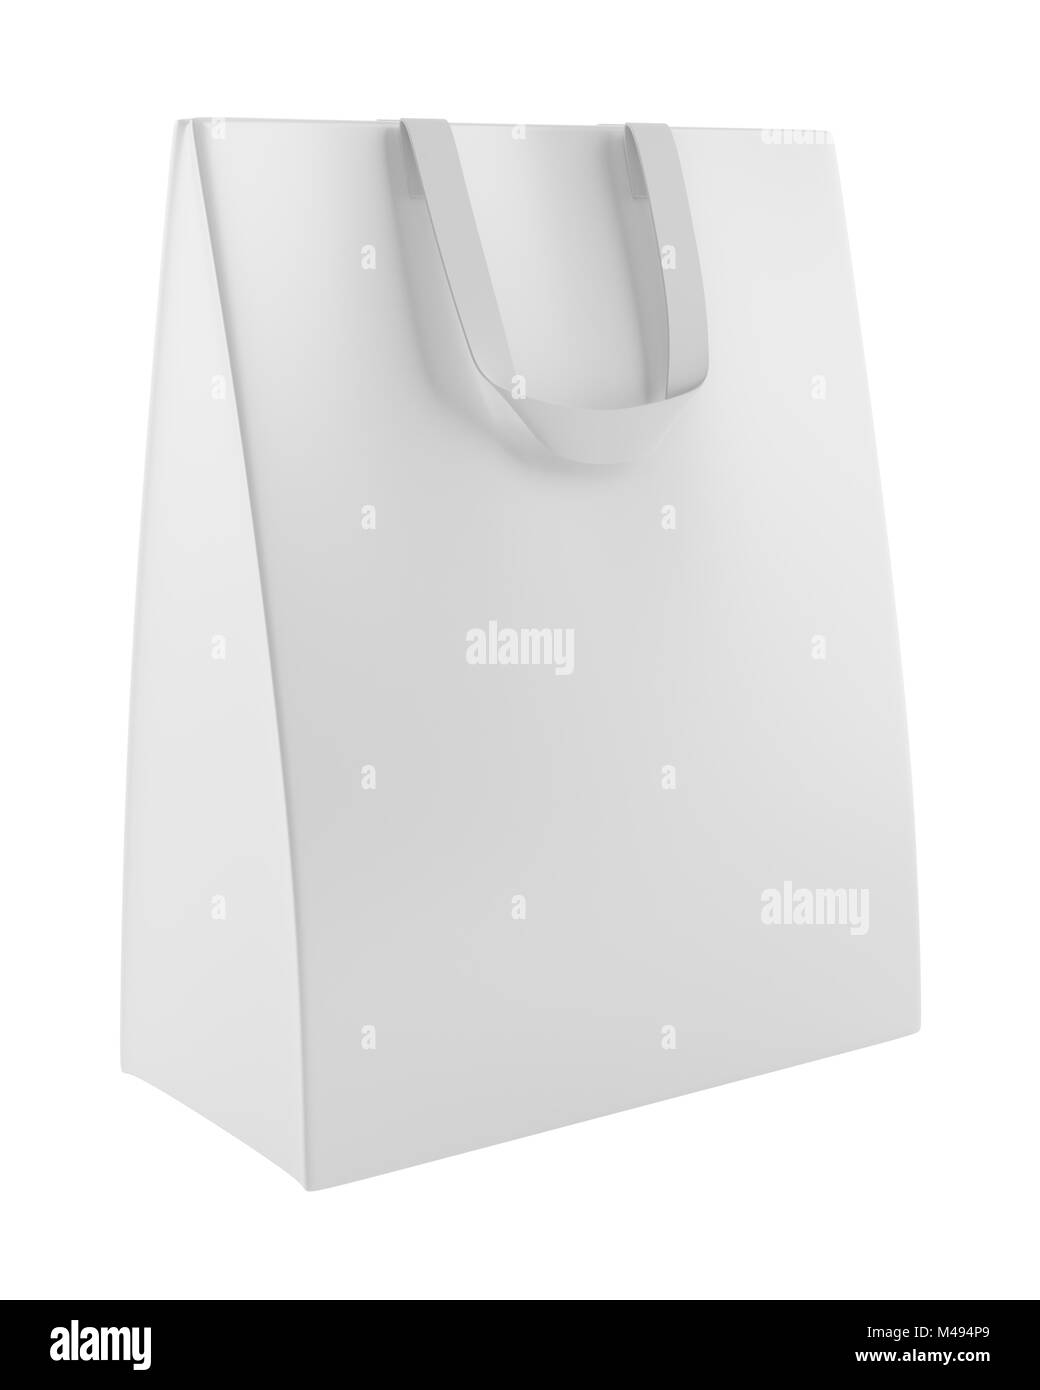 single blank shopping bag isolated on white background Stock Photo